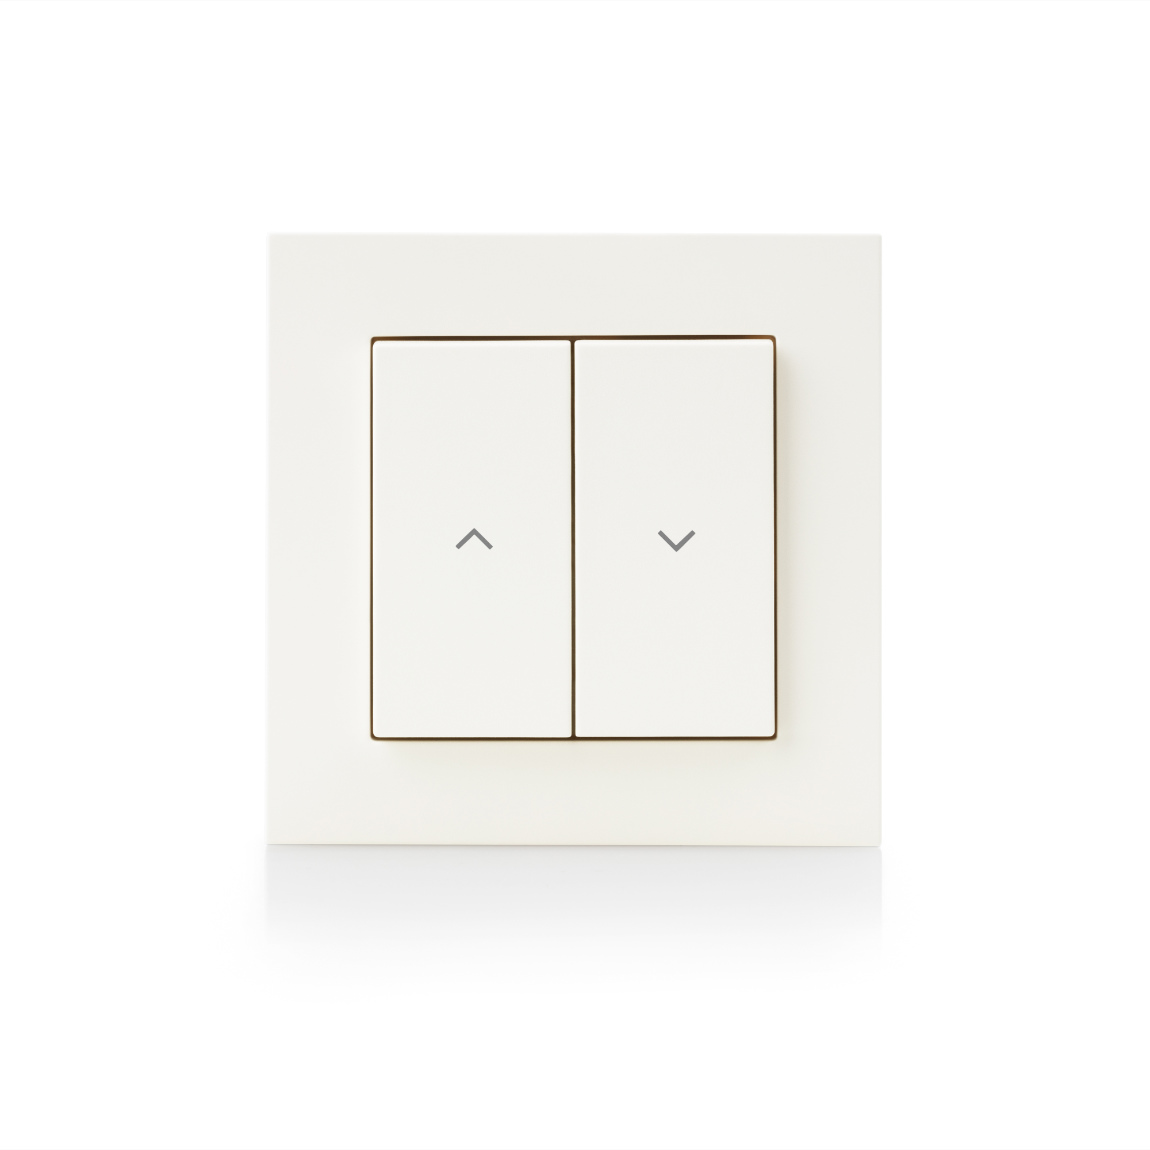 Eve Shutter Switch - Smarte Rollladensteuerung - Weiß